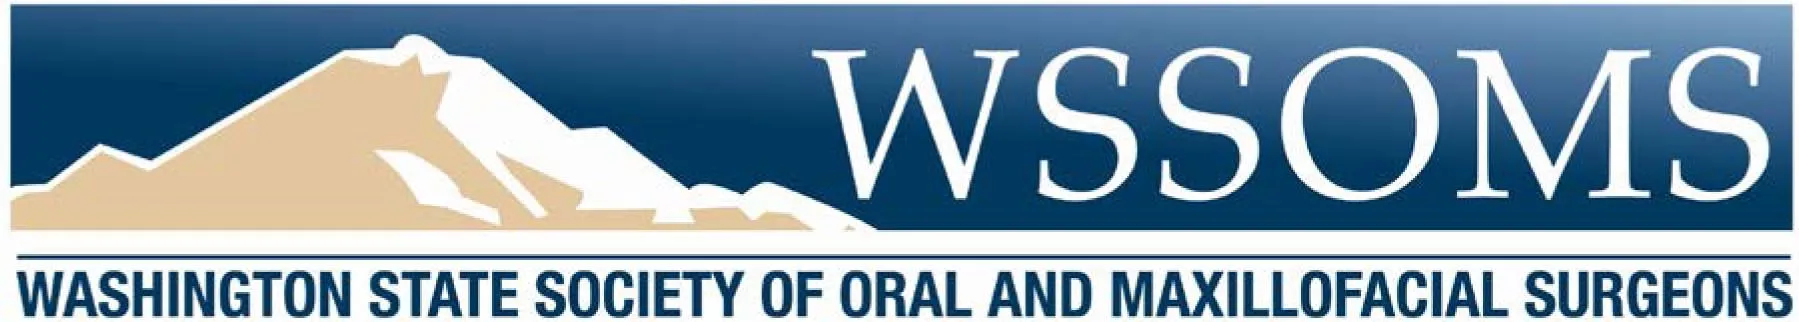 Washington State Society of Oral and Maxillofacial Surgeons Logo